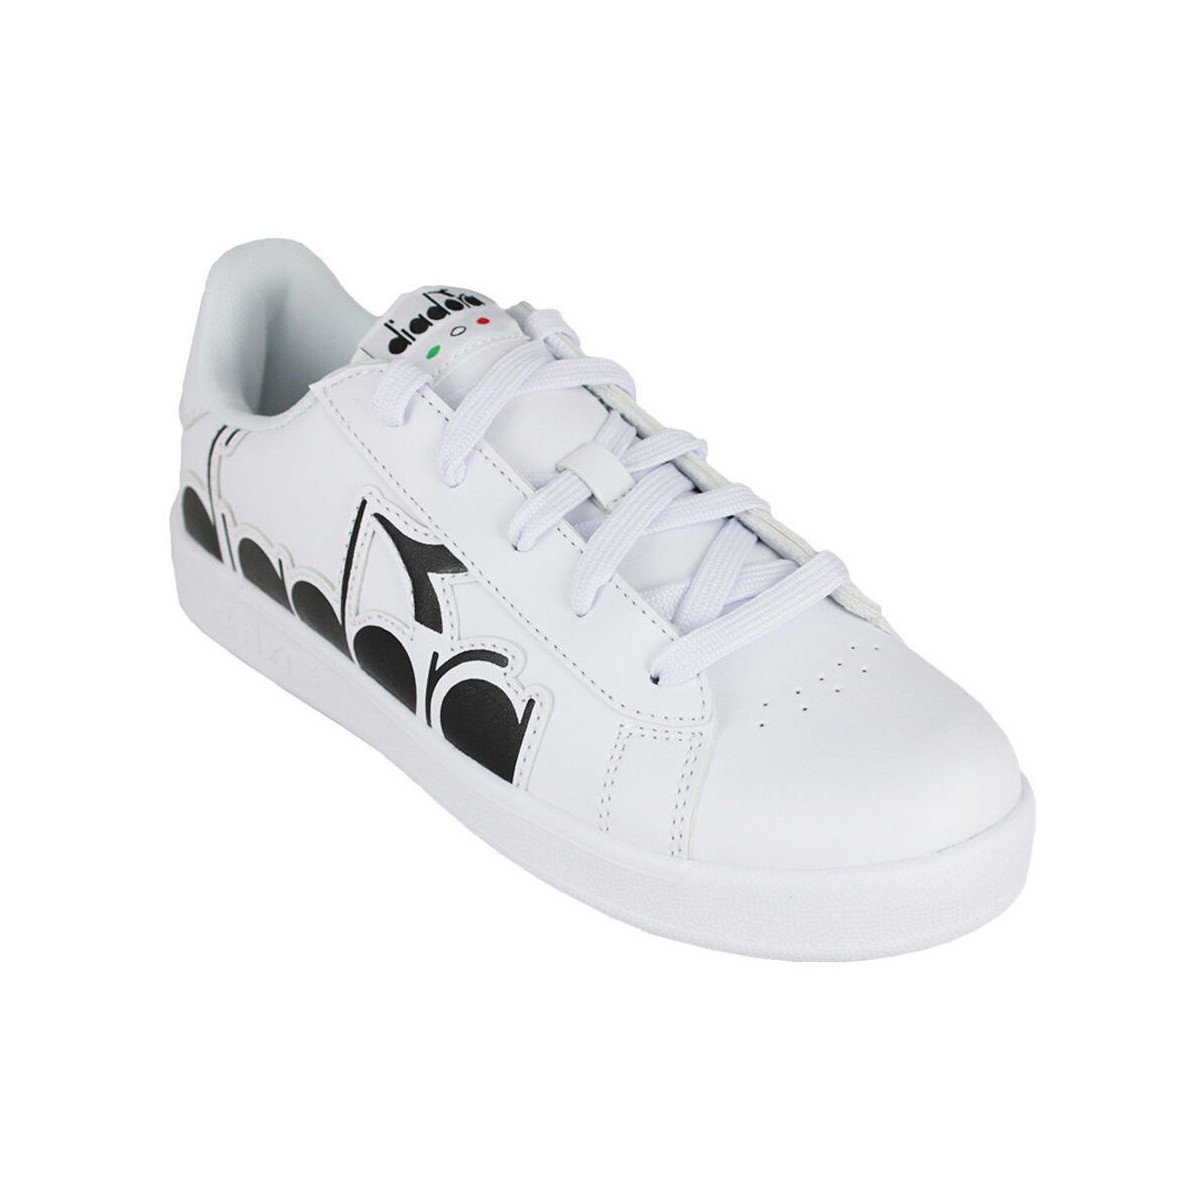 Pantofi Copii Sneakers Diadora 101.176274 01 C0351 White/Black Negru